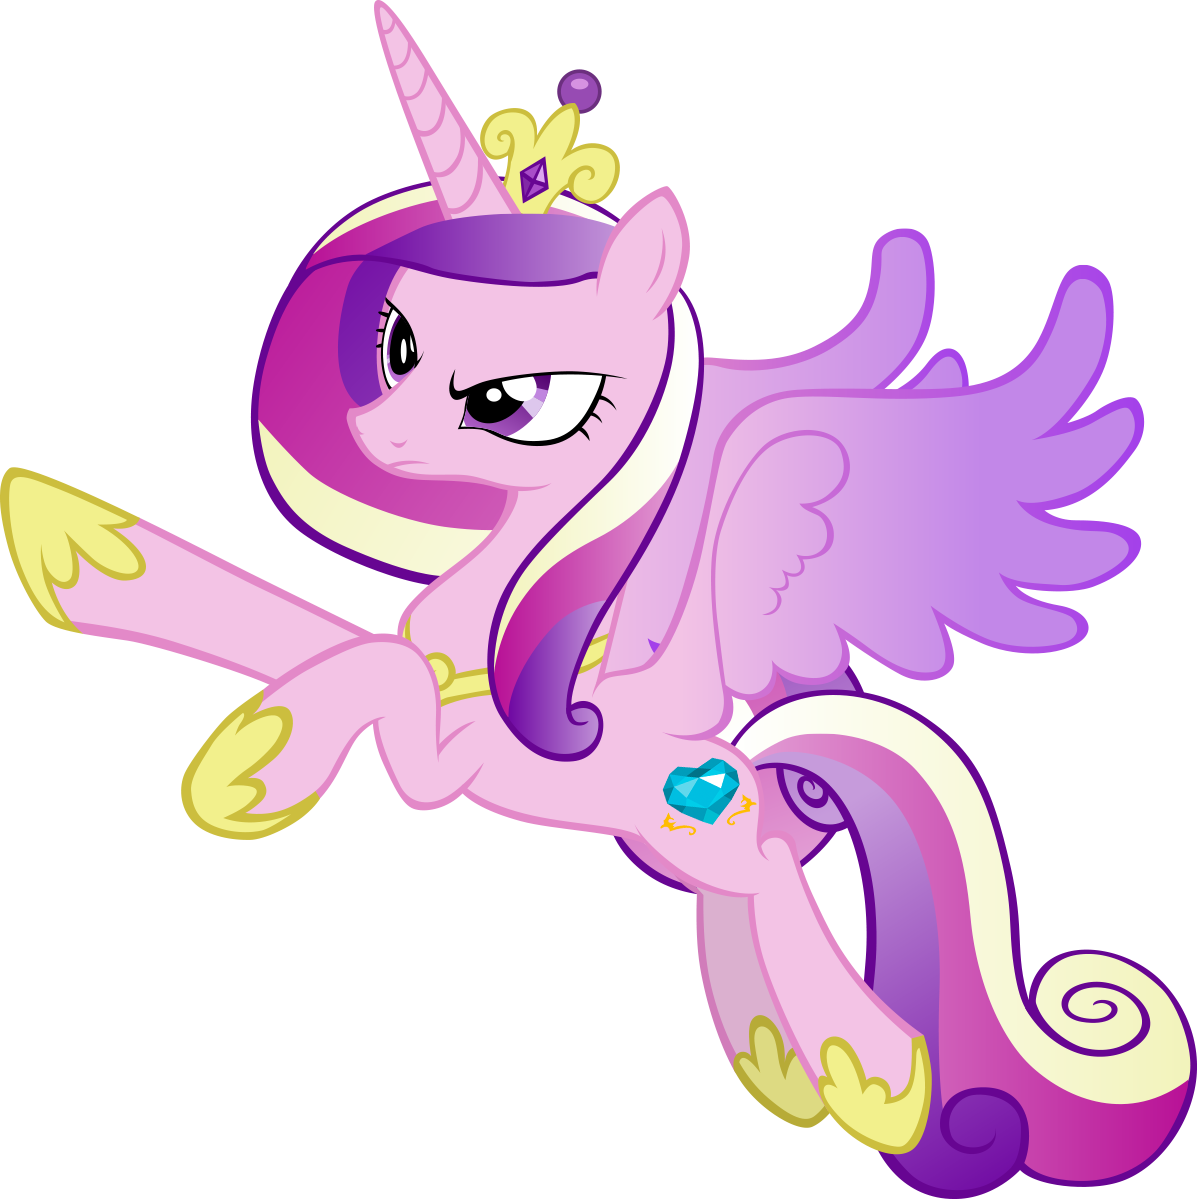 Литл пони принцесса каденс. My little Pony Каденс. My little Pony принцесса Каденс. МЛП принцесса Каденс. Принцесса Кейденс маленькая пони.